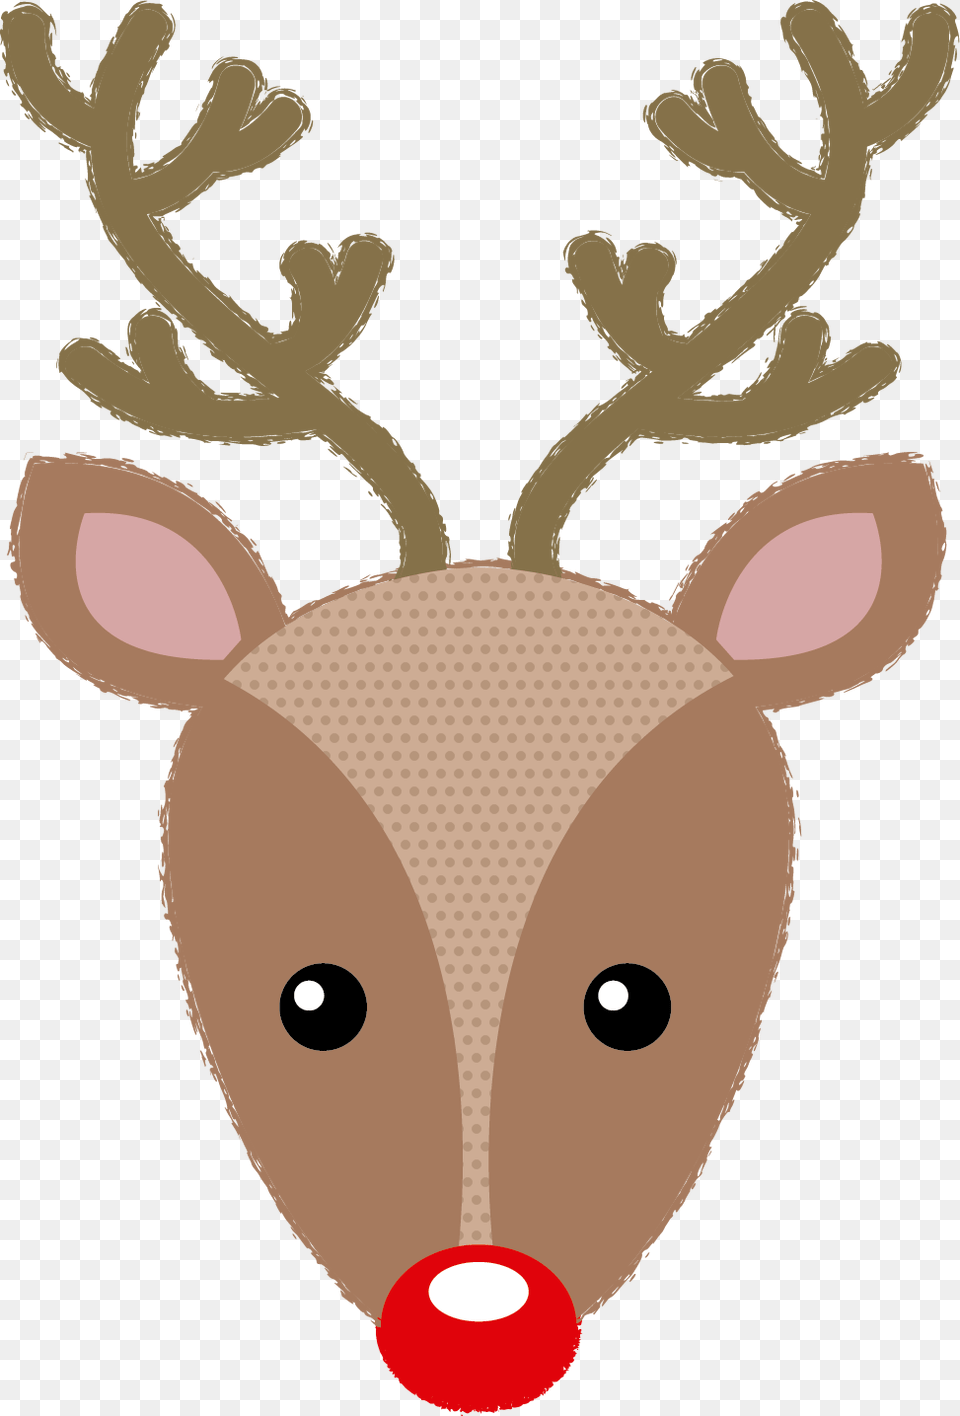 Reindeer Istock Sketch Merry Christmas Happy New Year Cute, Wildlife, Animal, Deer, Mammal Free Png